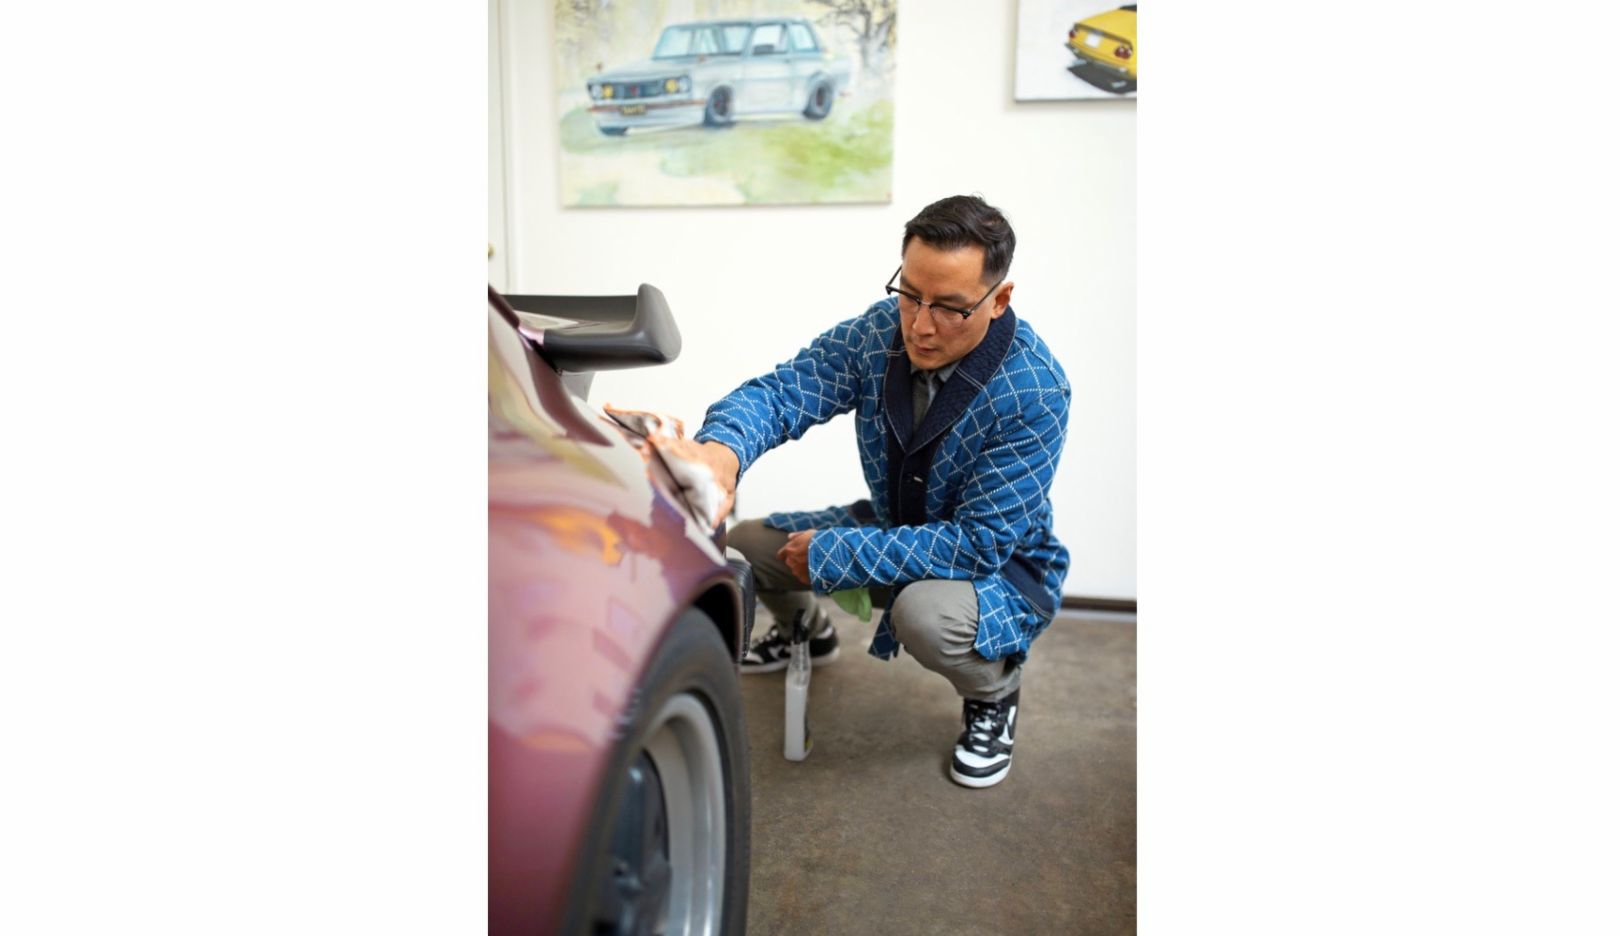 Dieci anni fa, Daniel Wu rilevò dal padre la Porsche 911, anno di costruzione 1988. Da allora, la custodisce con grande cura. Alla sportiva, padre e figlio associano tanti ricordi vissuti insieme.